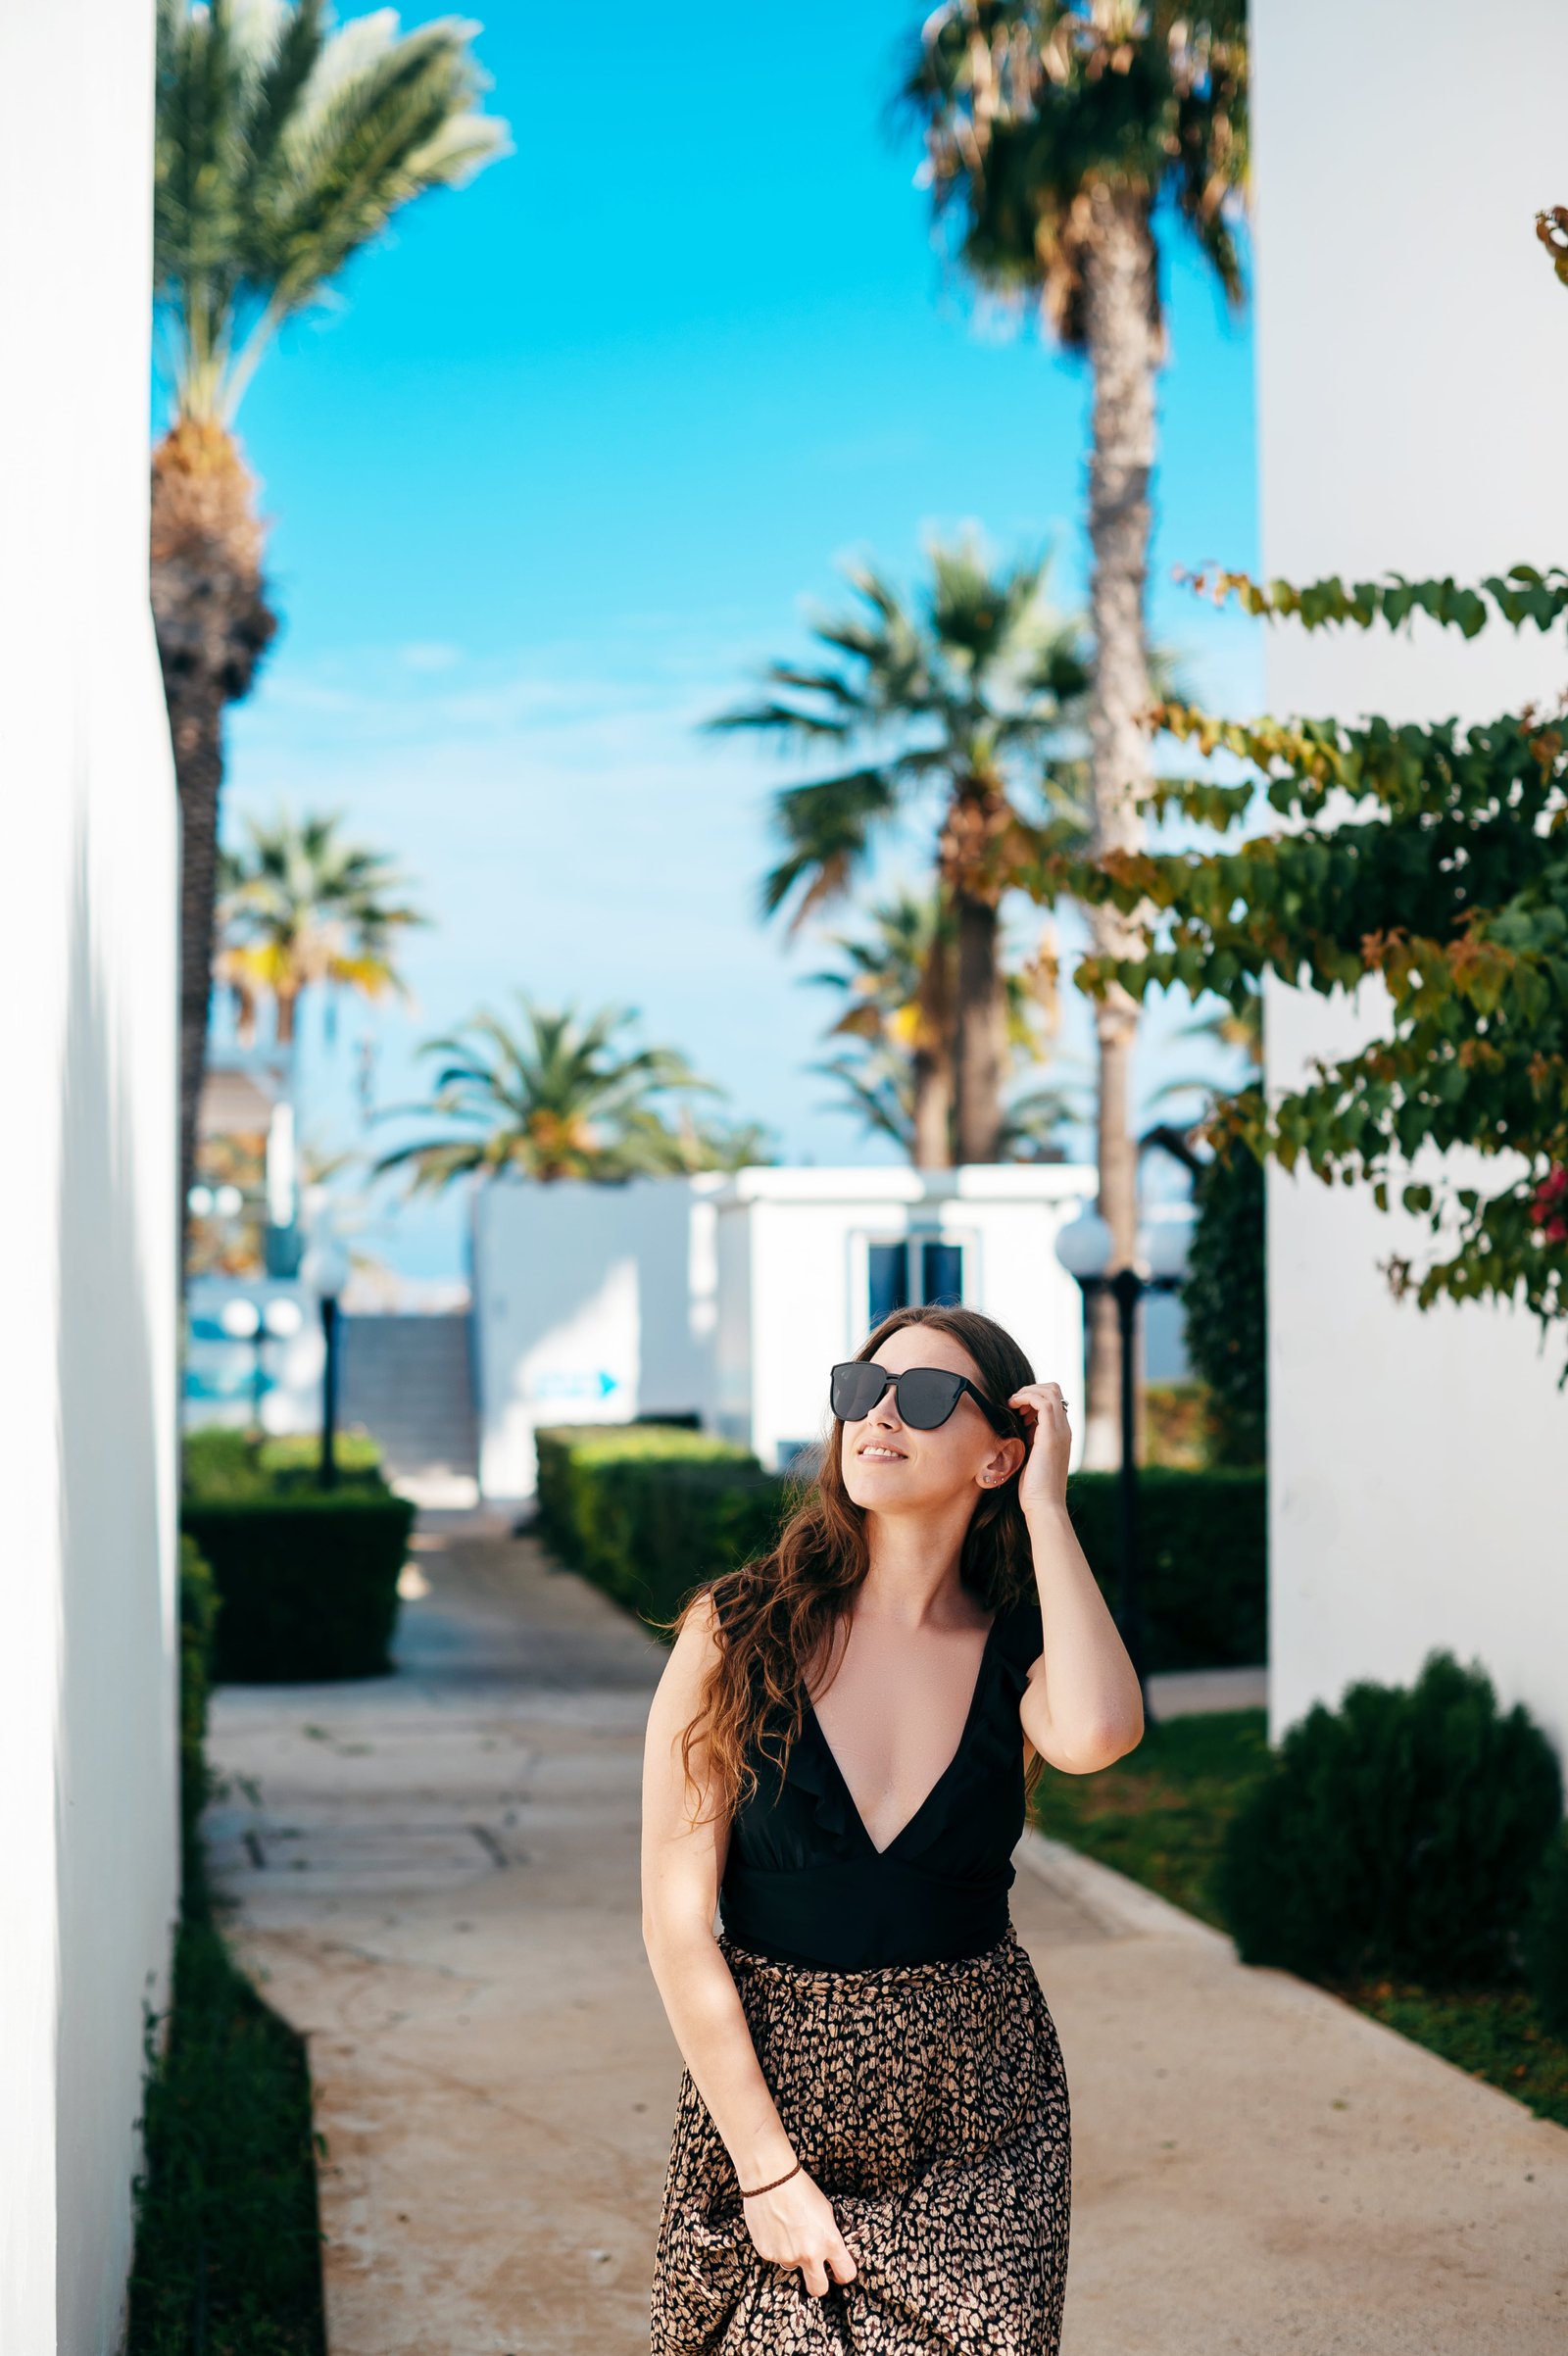 femme aux cheveux noirs portant des lunettes de soleil et une robe élégante debout parmi les palmiers sur le territoire de l'hôtel complexe de luxe pour les vacances d'été